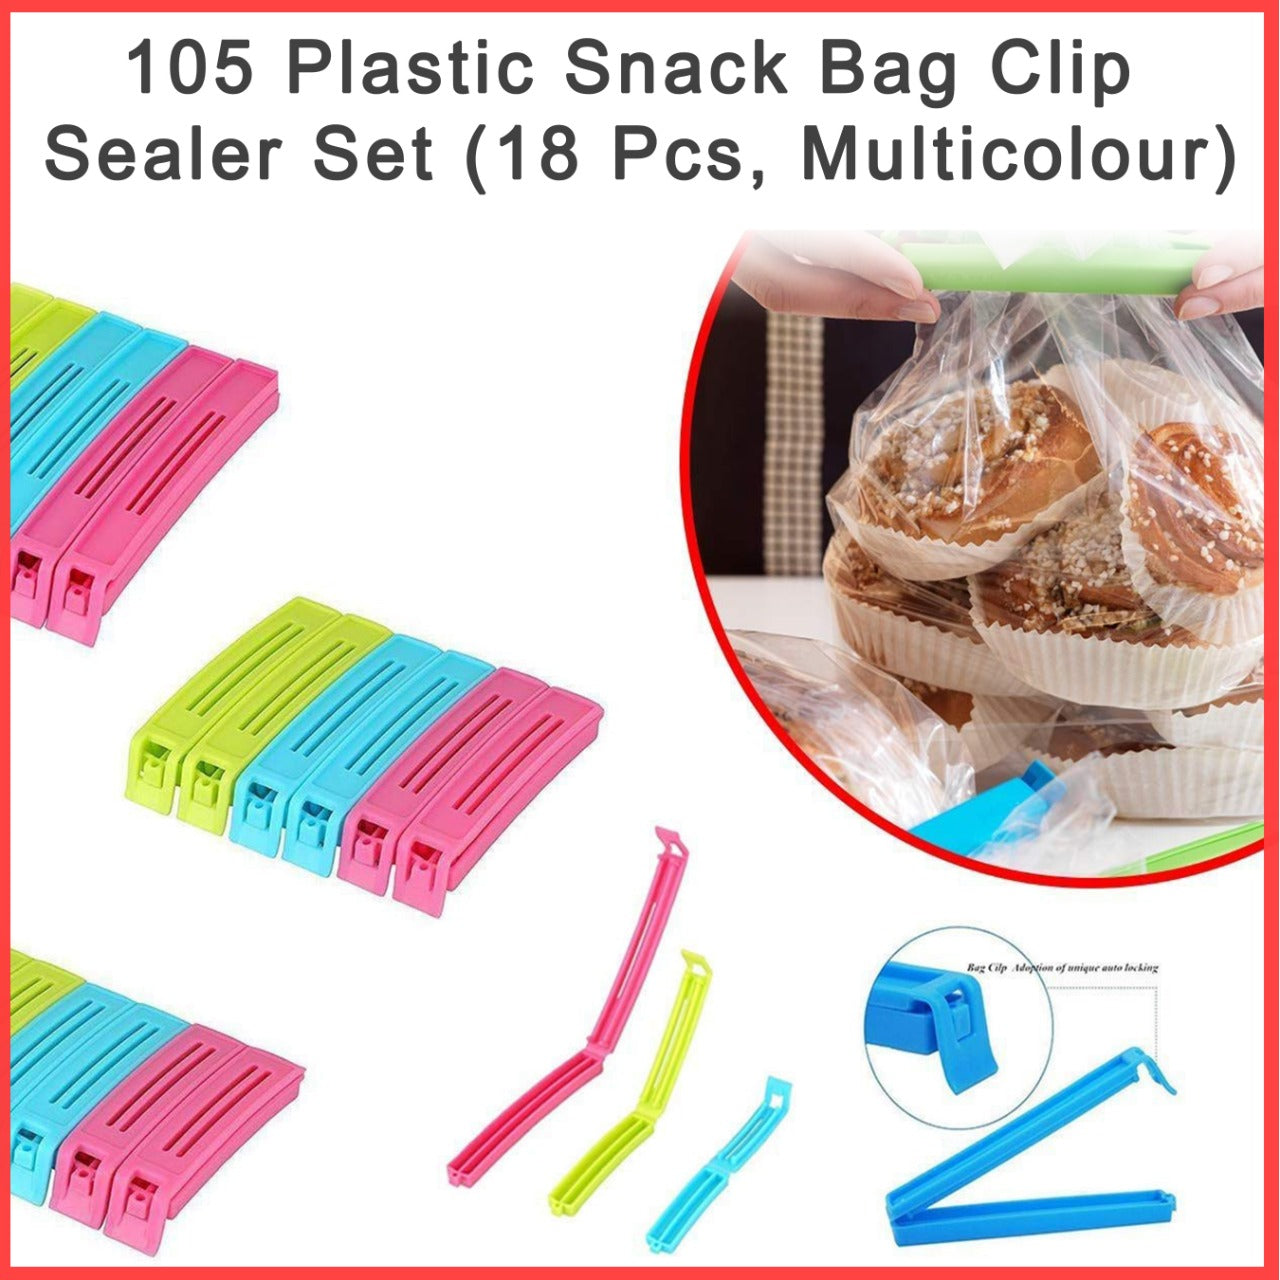 Plastic Snack Bag Clip Sealer Set (18 Pcs, Multicolour)